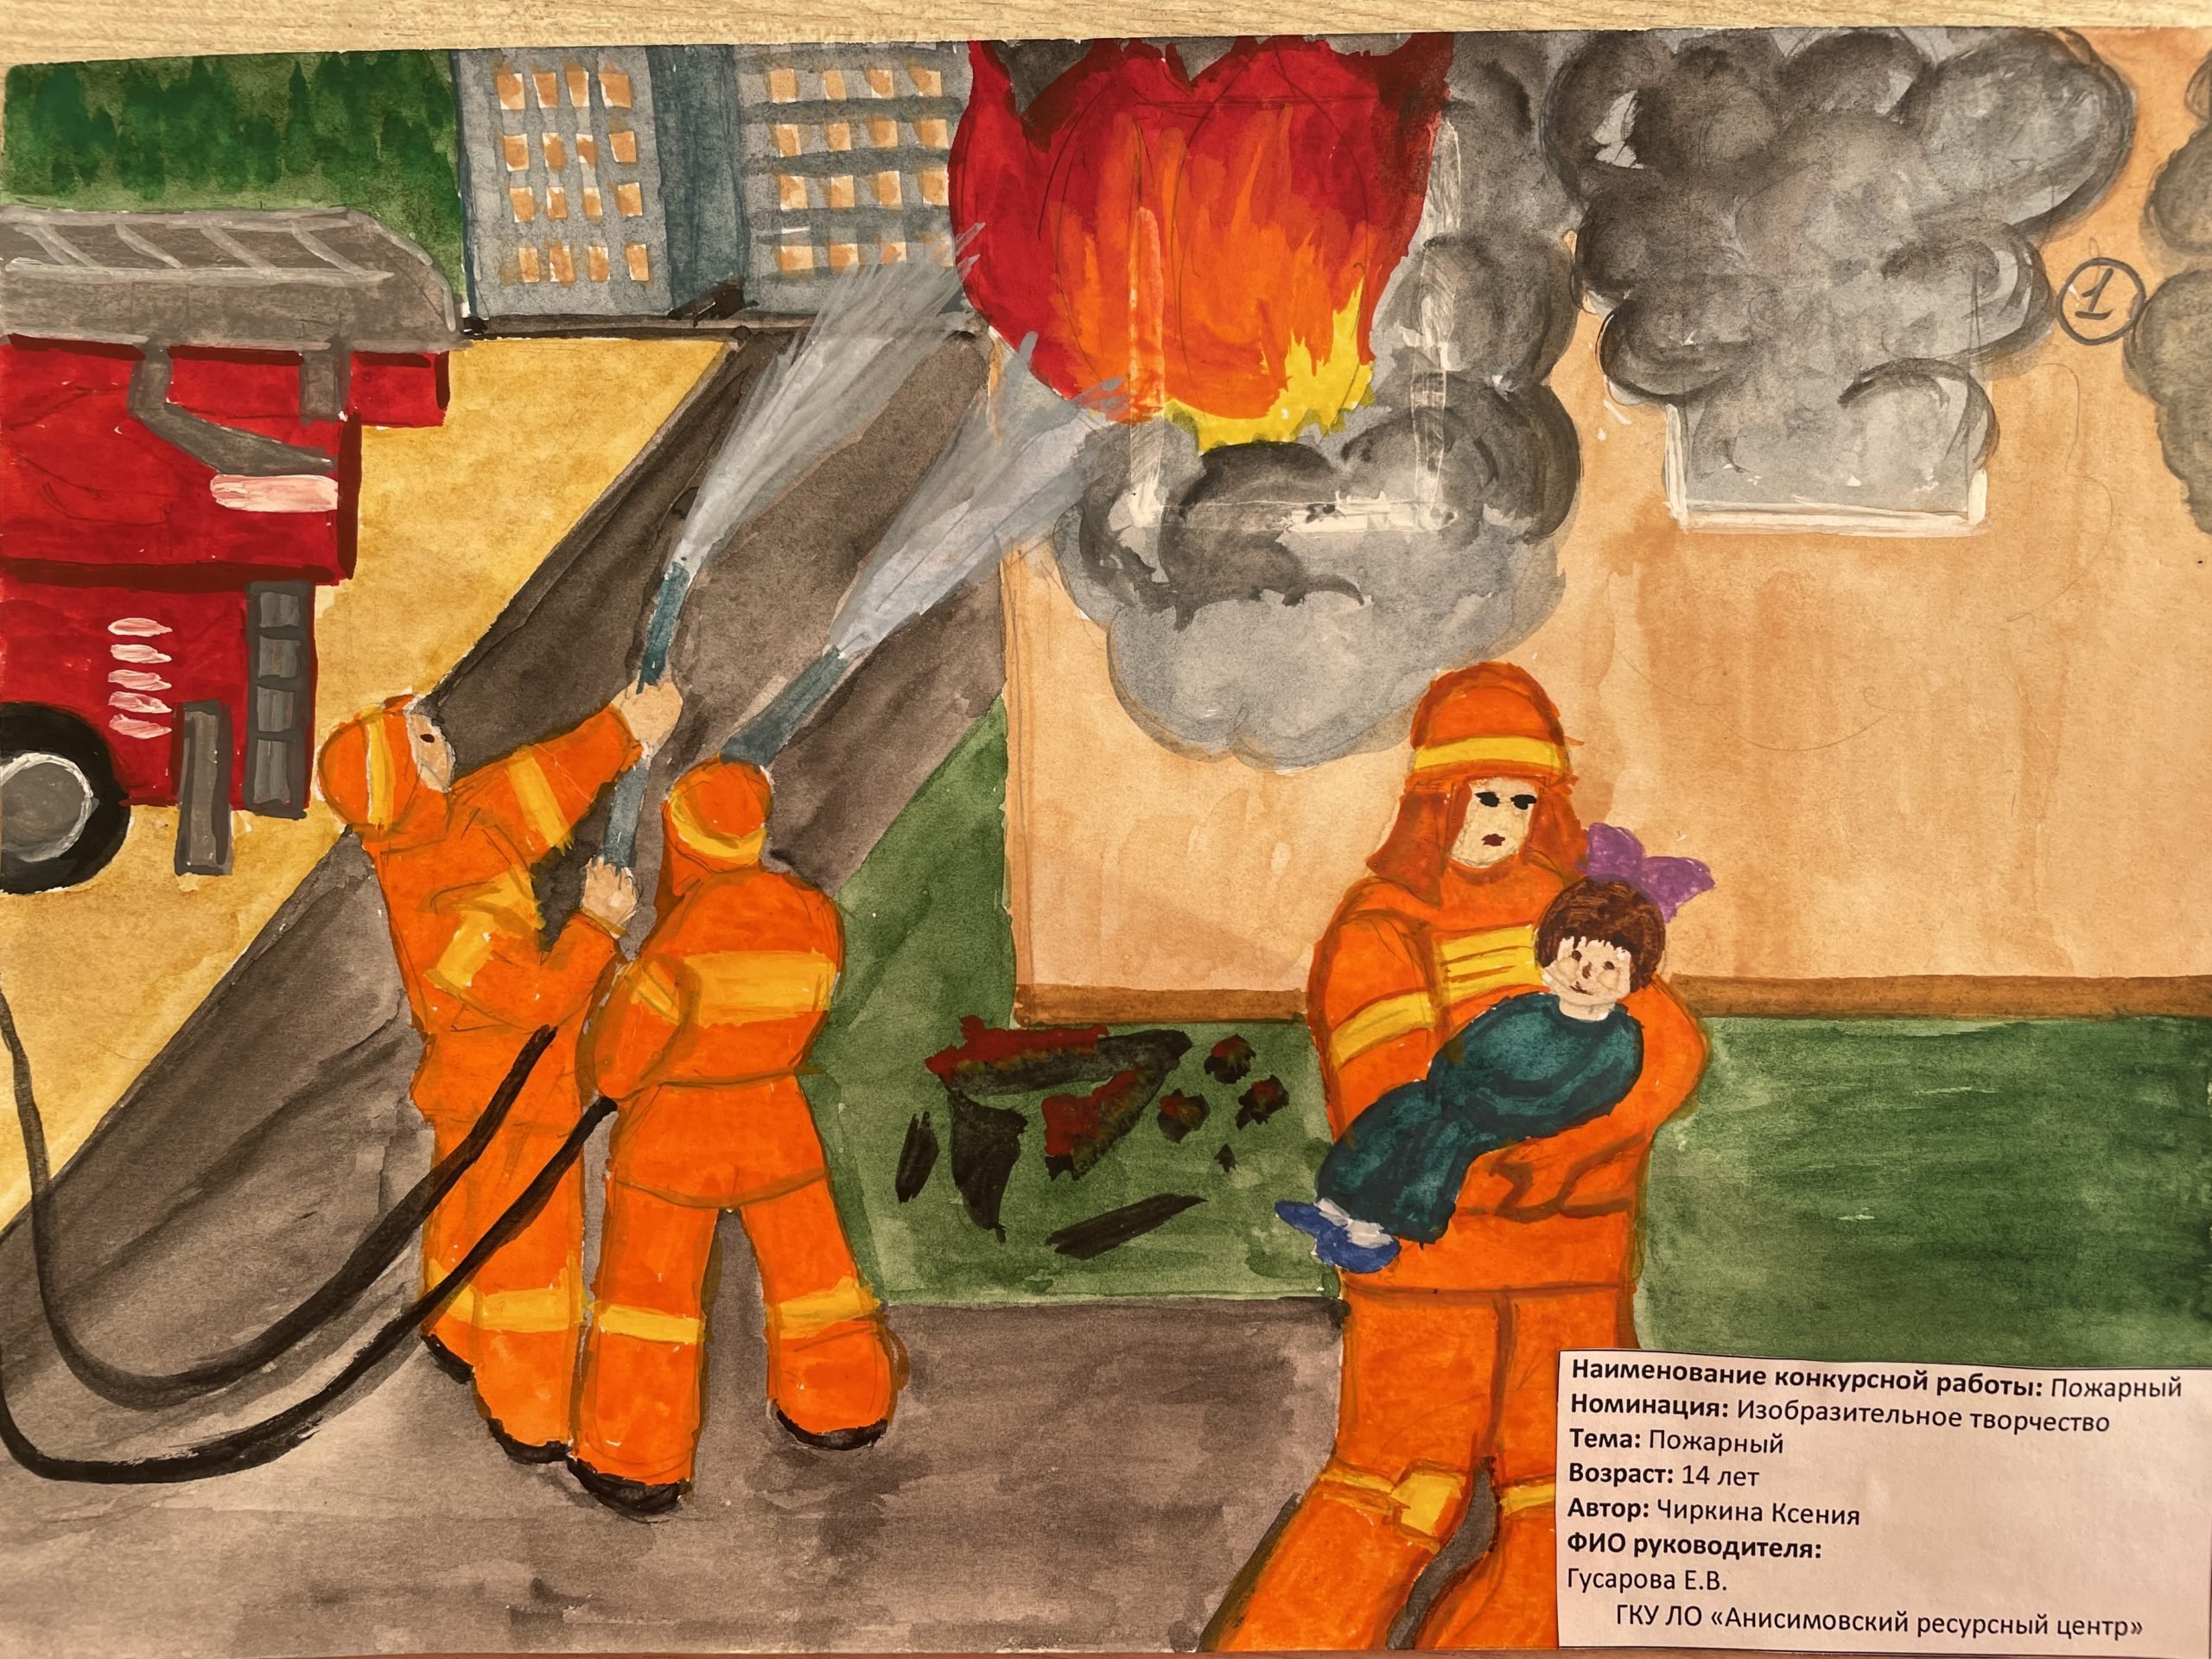 Пожарный надзор рисунок